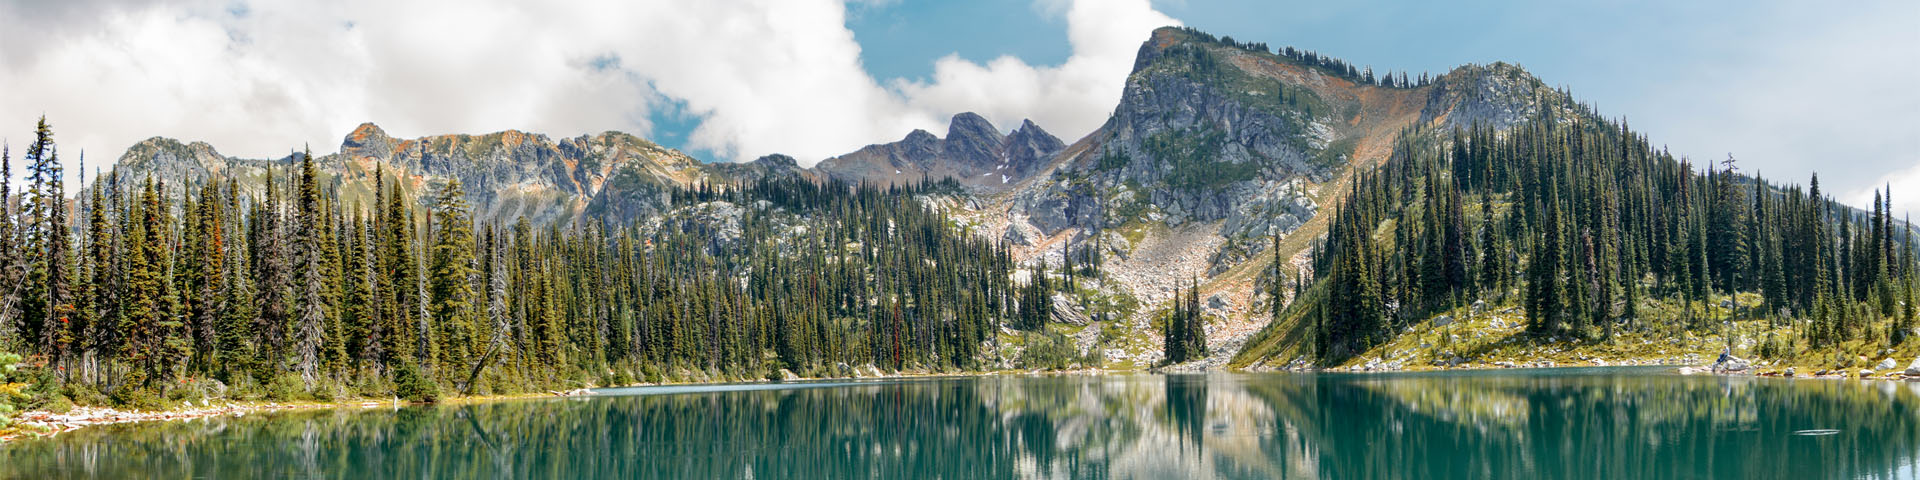 Photo de paysage d'un décor alpin avec un lac en forme de miroir au premier plan